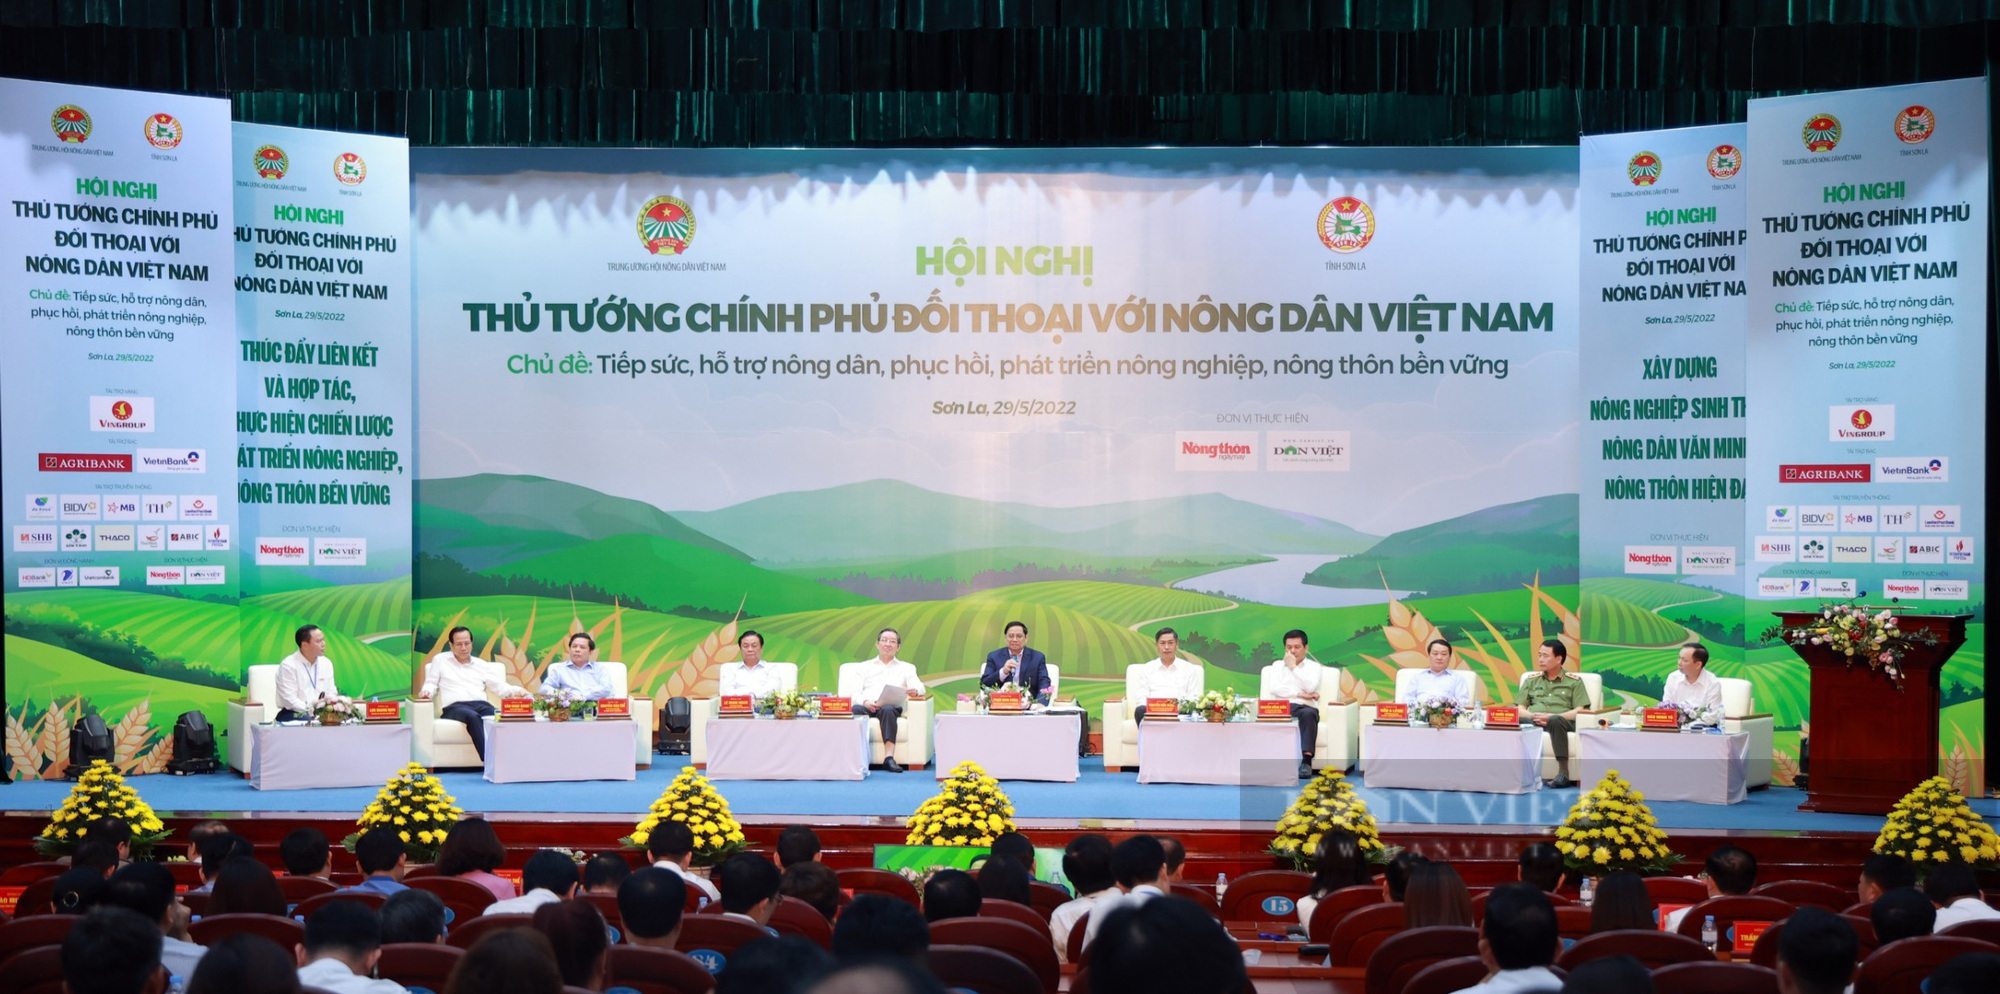 Thư cảm ơn Báo NTNN/Dân Việt về thực hiện Hội nghị Thủ tướng Chính phủ đối thoại với nông dân năm 2022 - Ảnh 2.